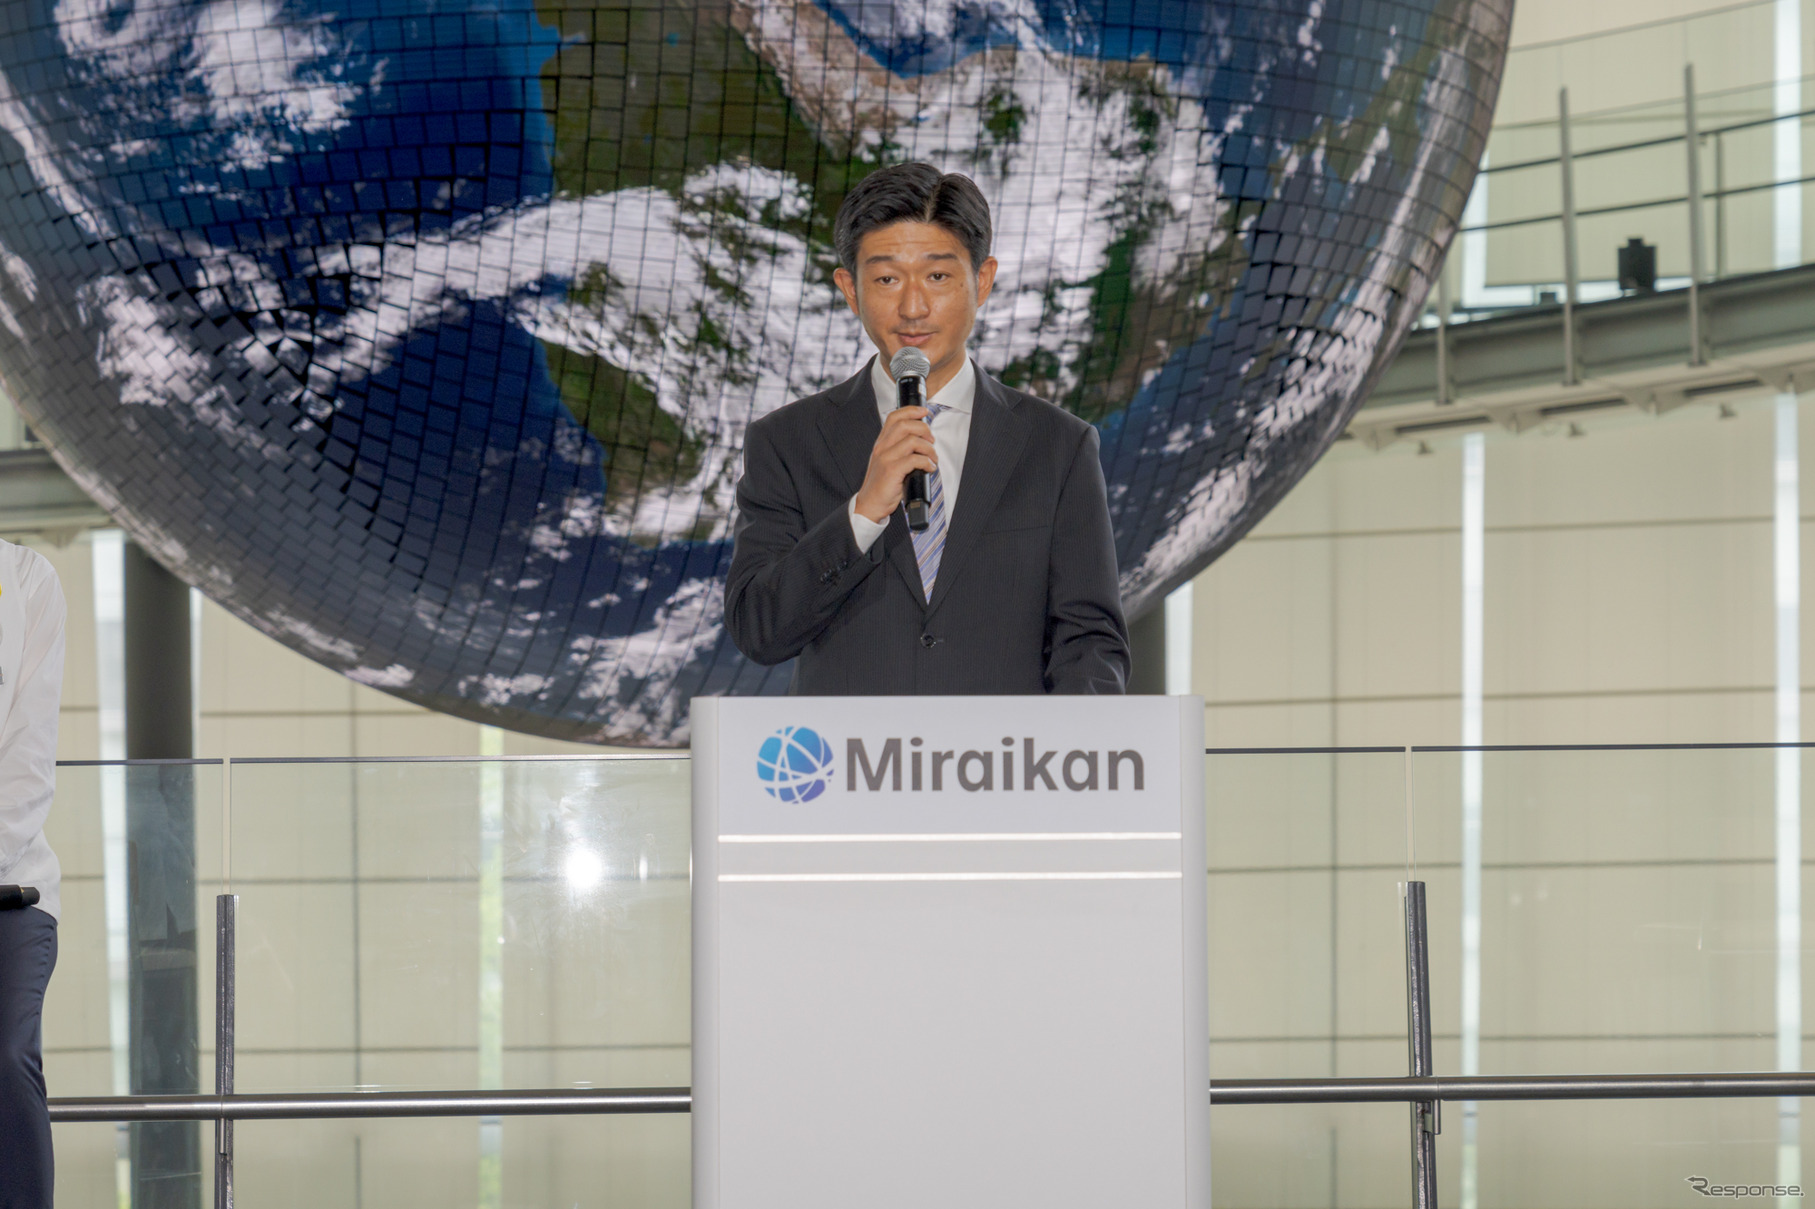 副館長の高木啓伸氏。4つのテーマ設定と、科学コミュニケーションについて語られた。